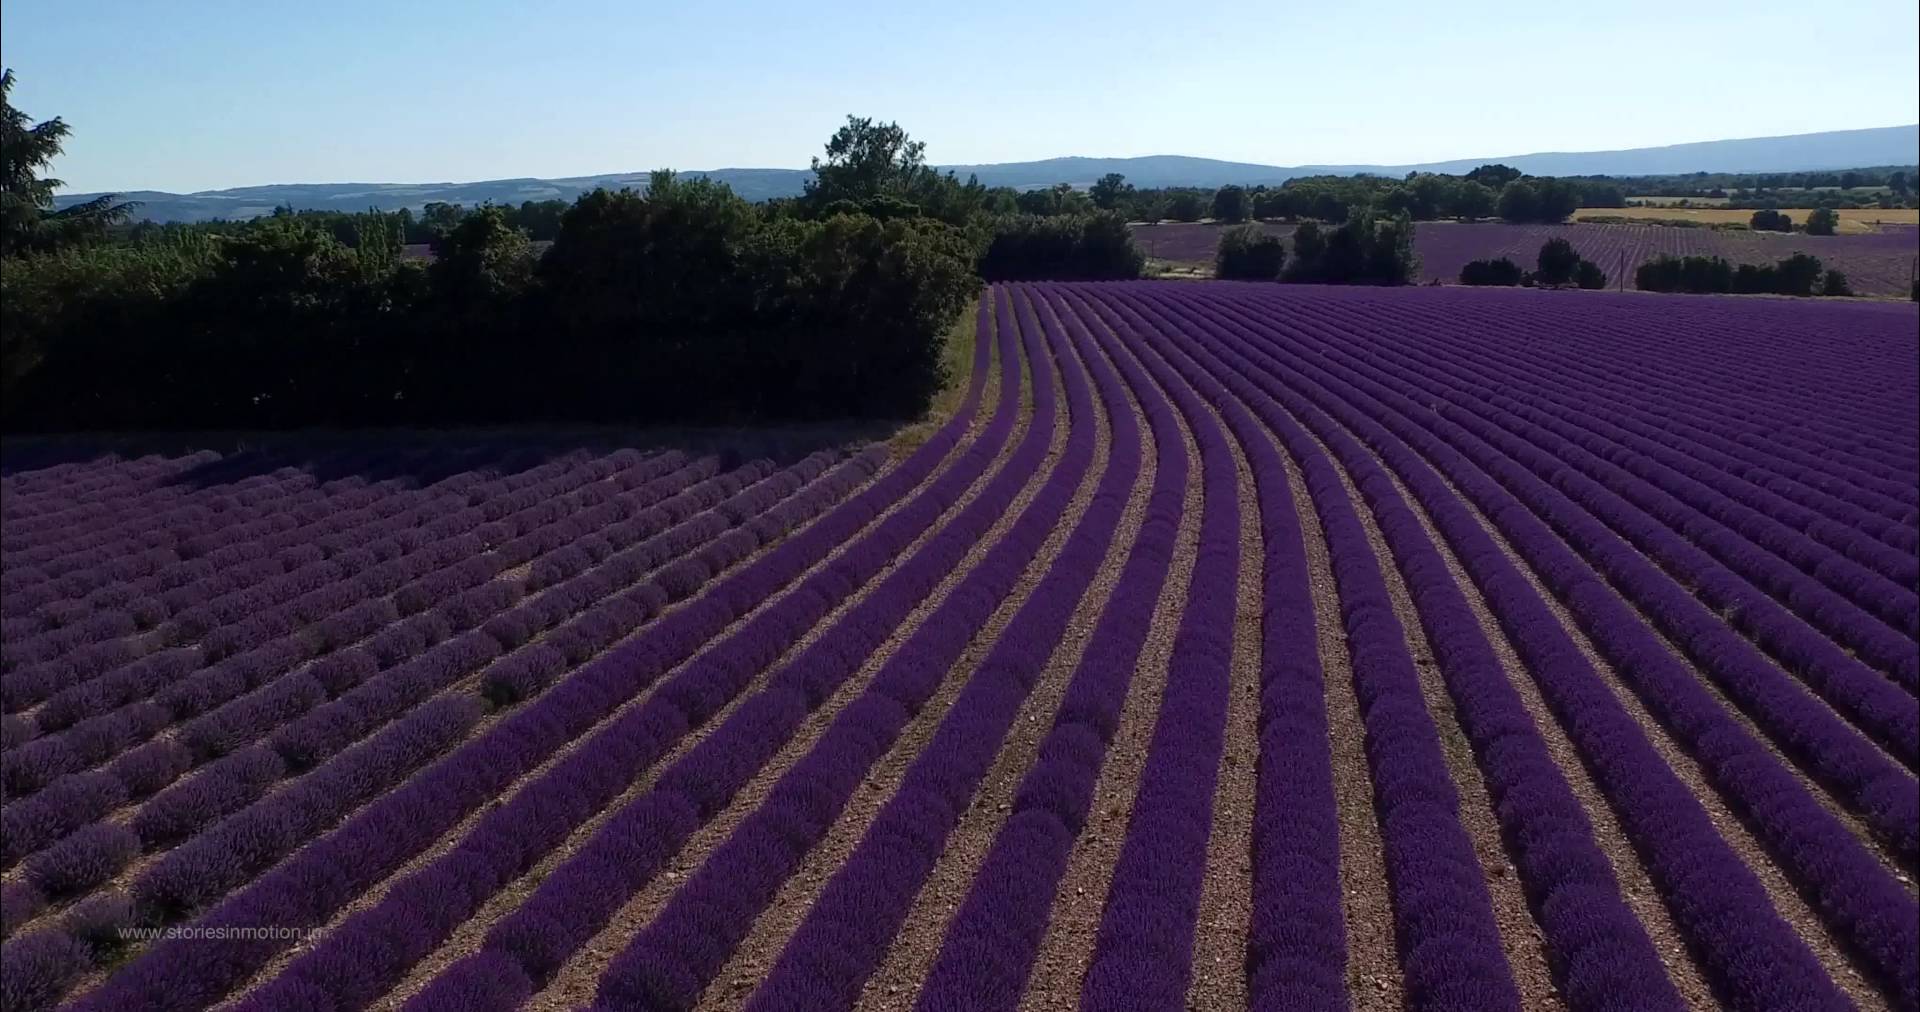 C’est beau la Provence d’en haut